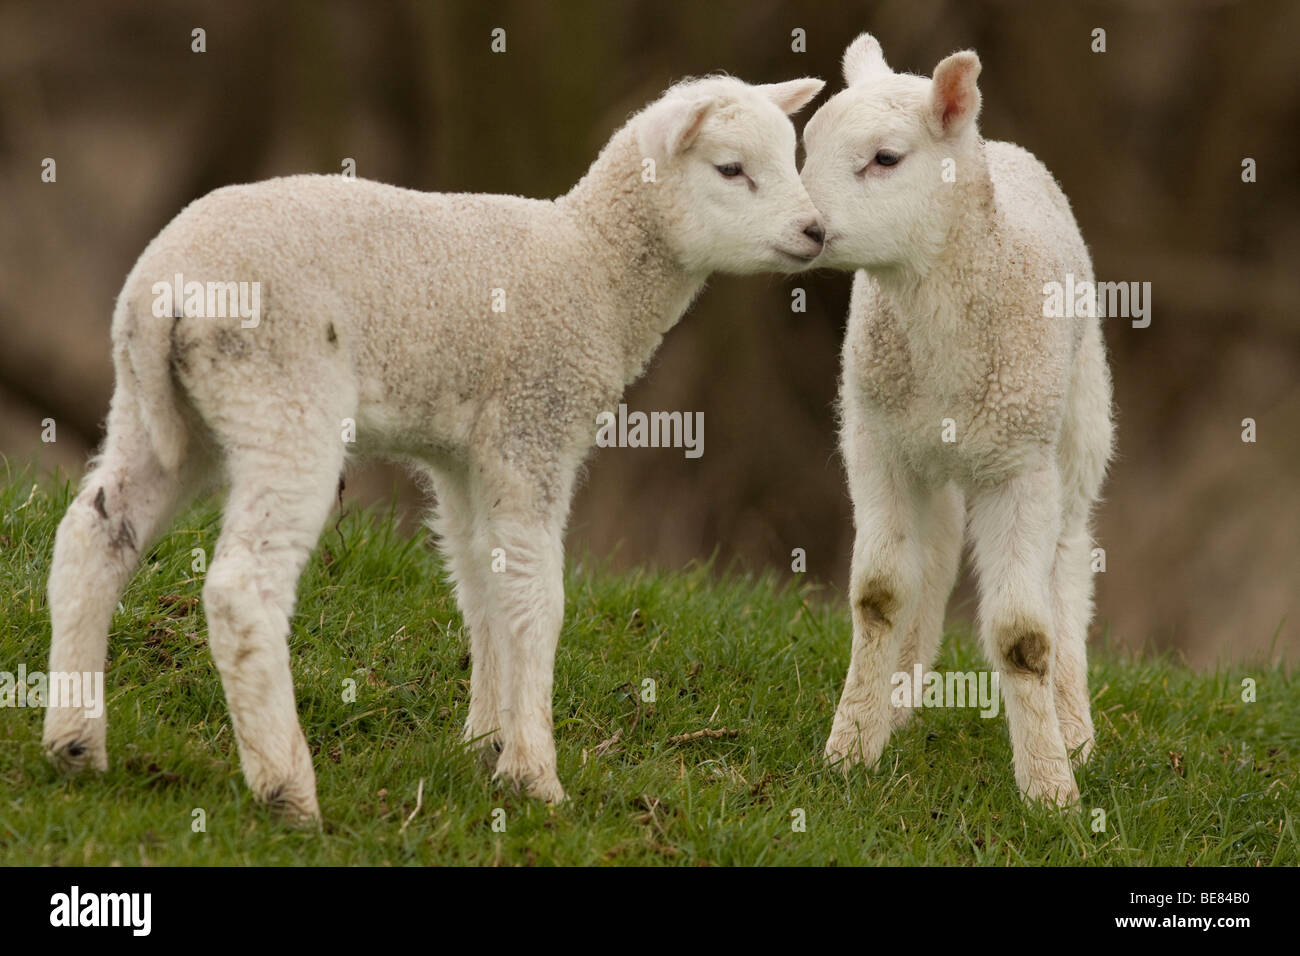 Hub bedriegen verdrievoudigen Jonge dieren hi-res stock photography and images - Alamy